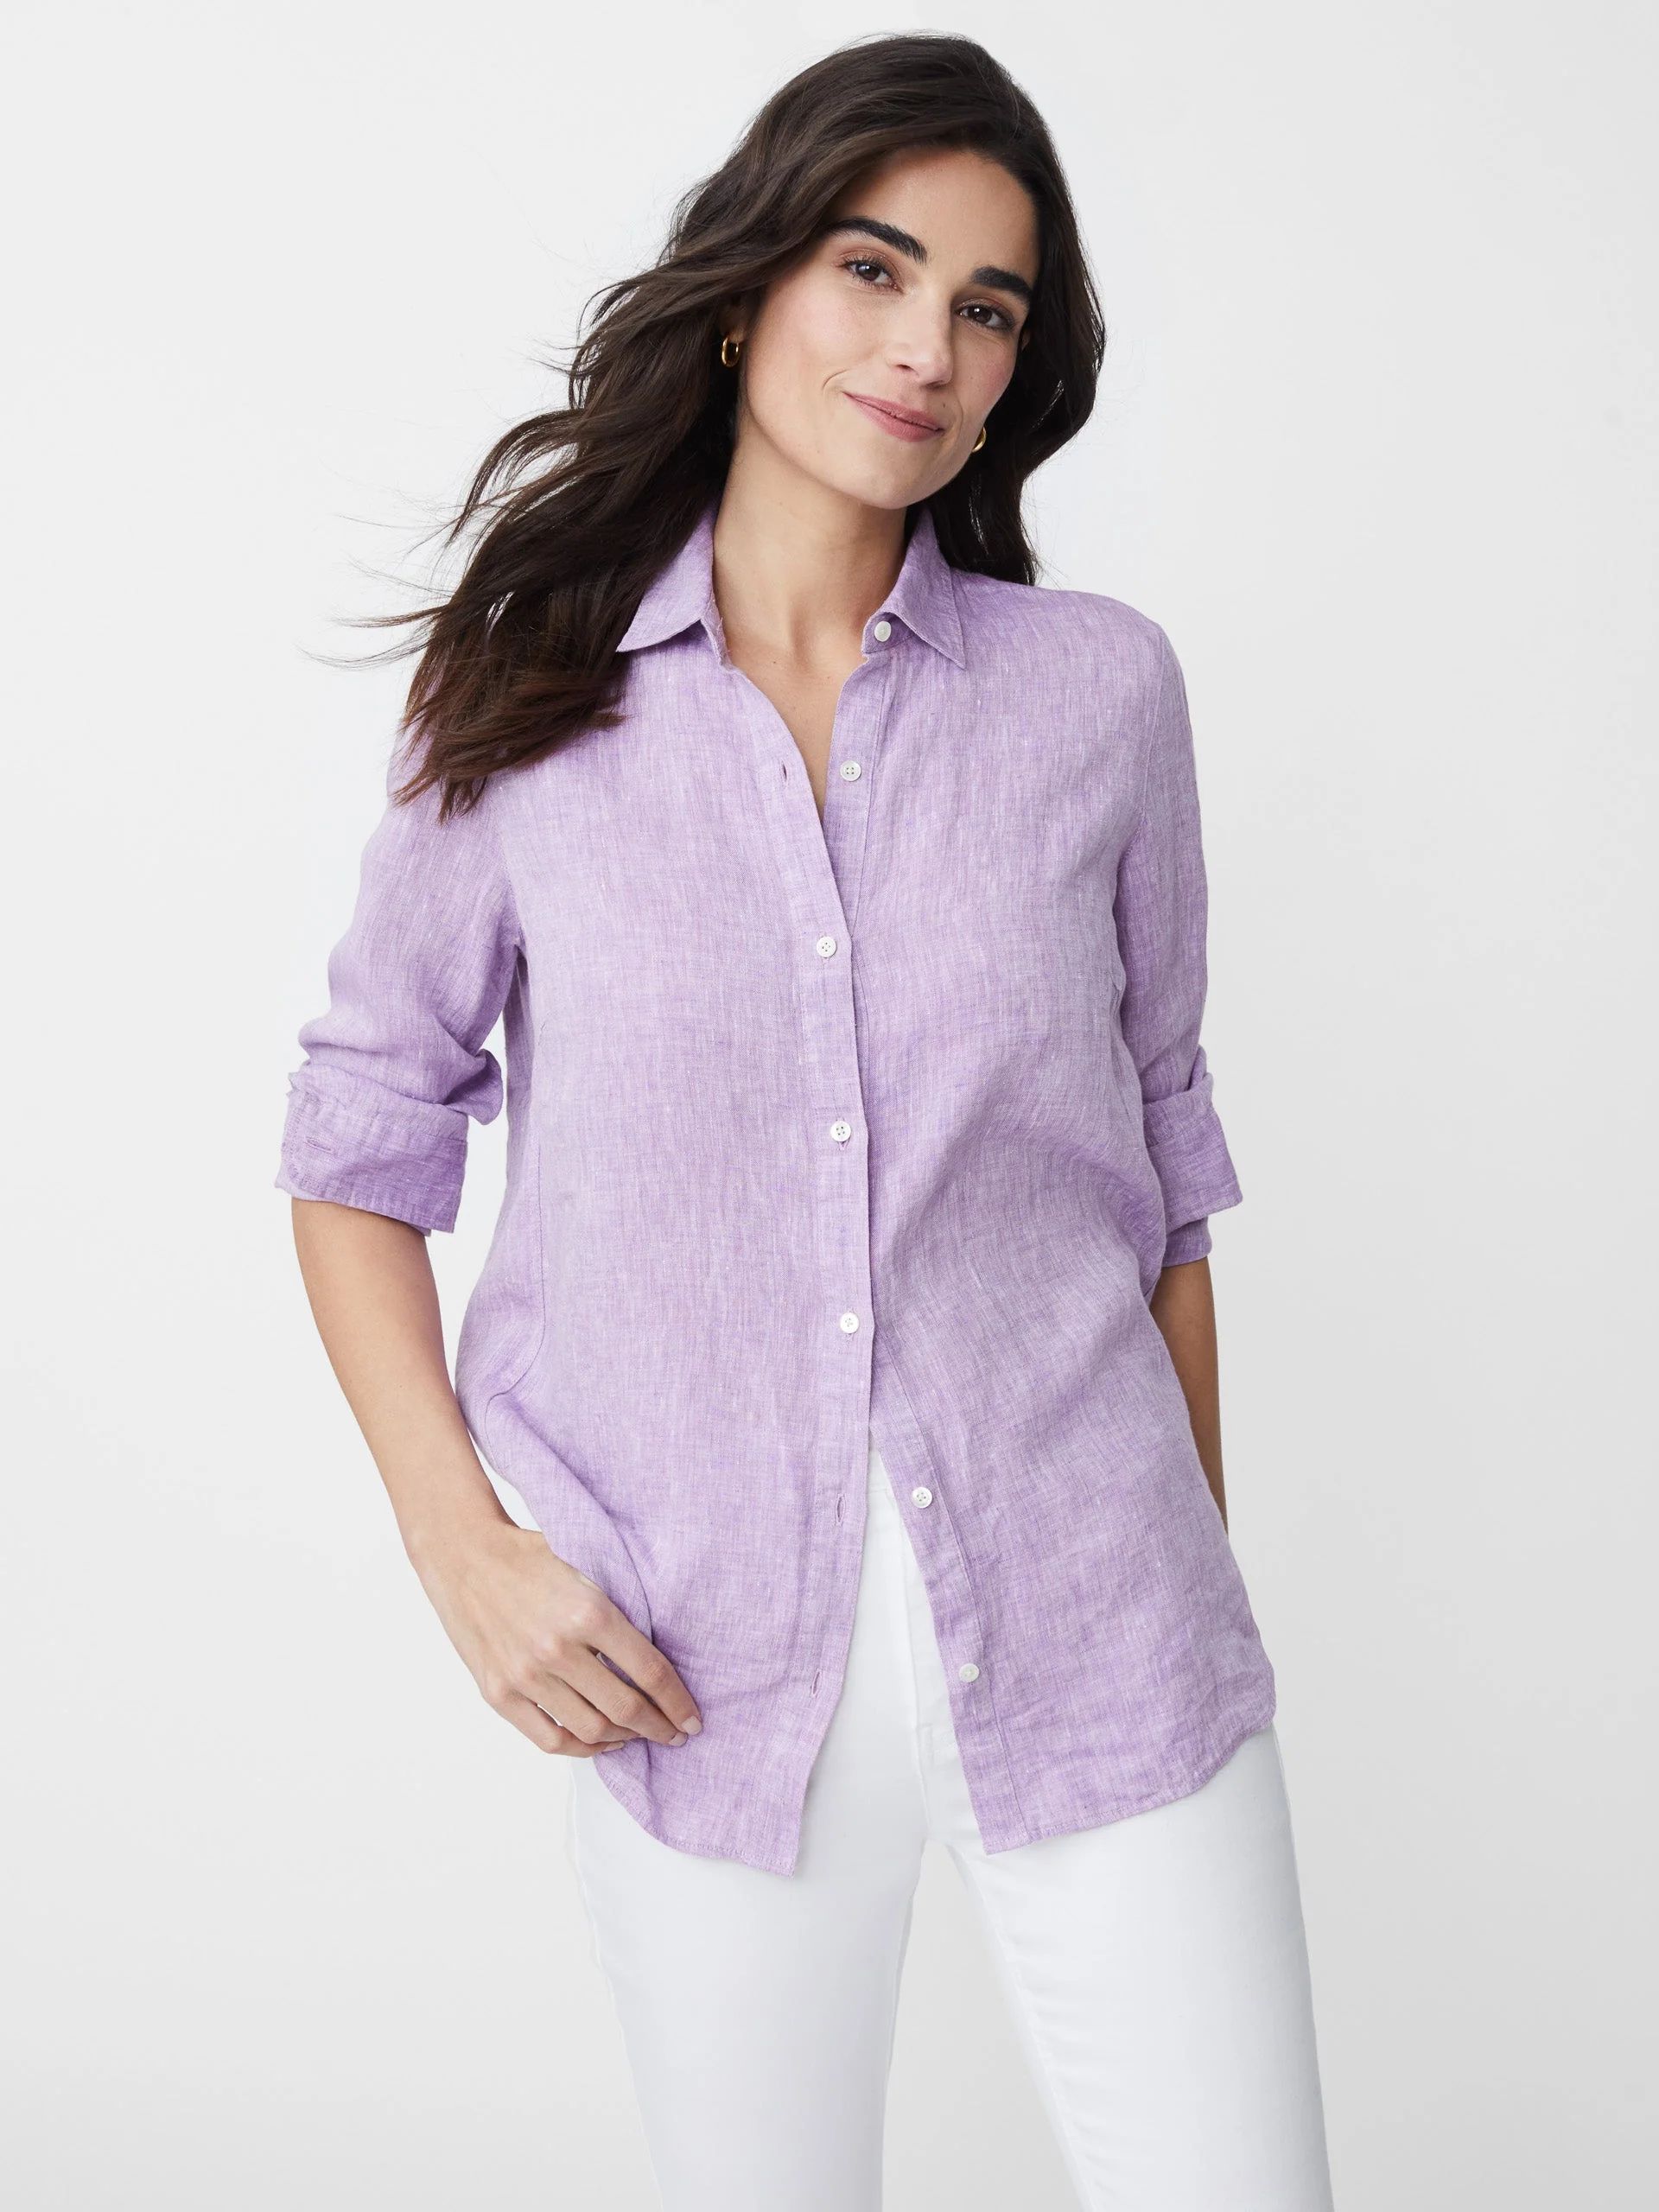 Elderberry Solid Britt Linen Shirt | Women's Tops  | J.McLaughlin | J.McLaughlin